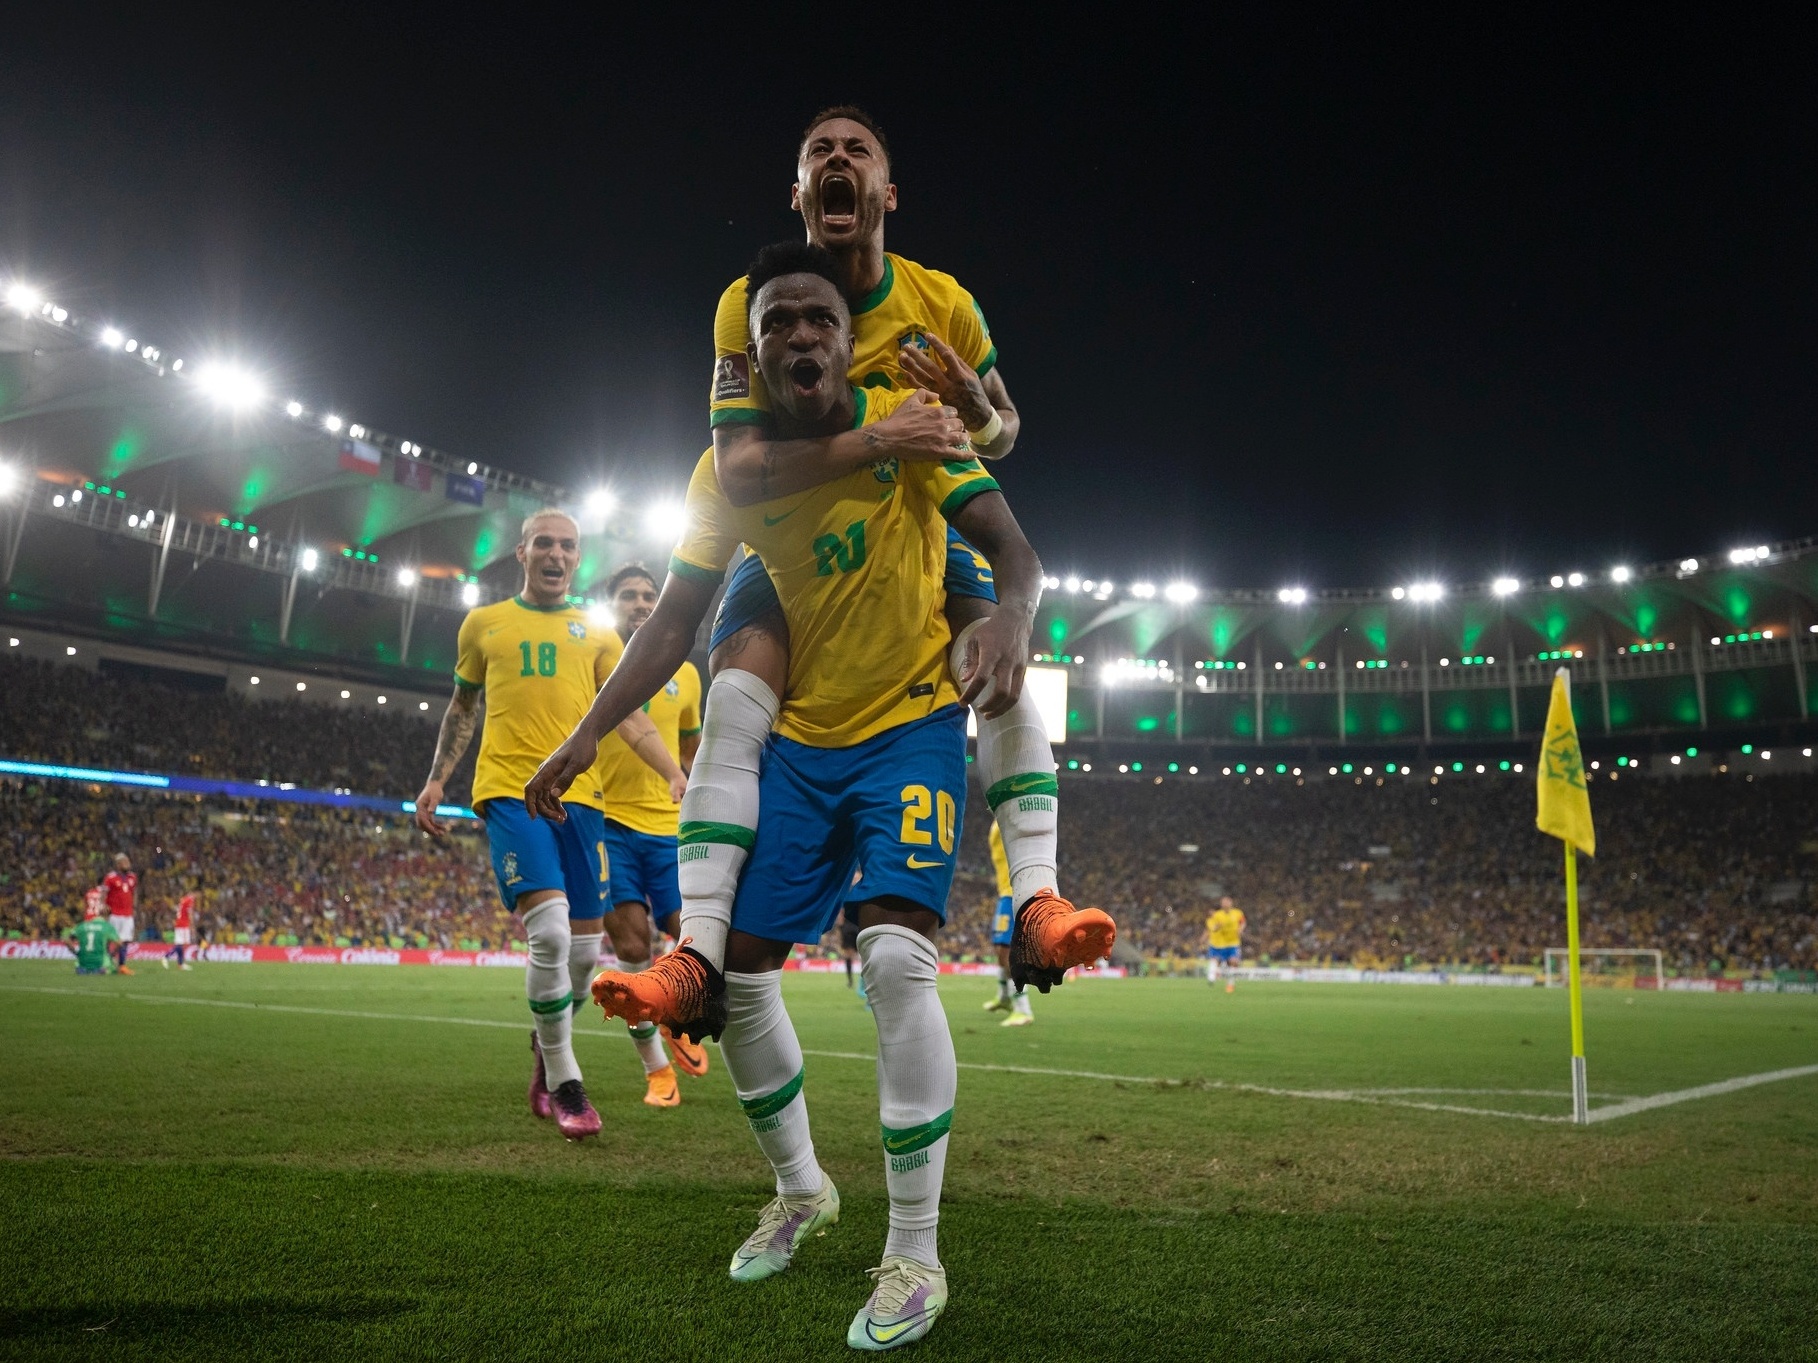 História do Futebol Brasileiro - A Dica do Dia, Grátis - Rio & Learn